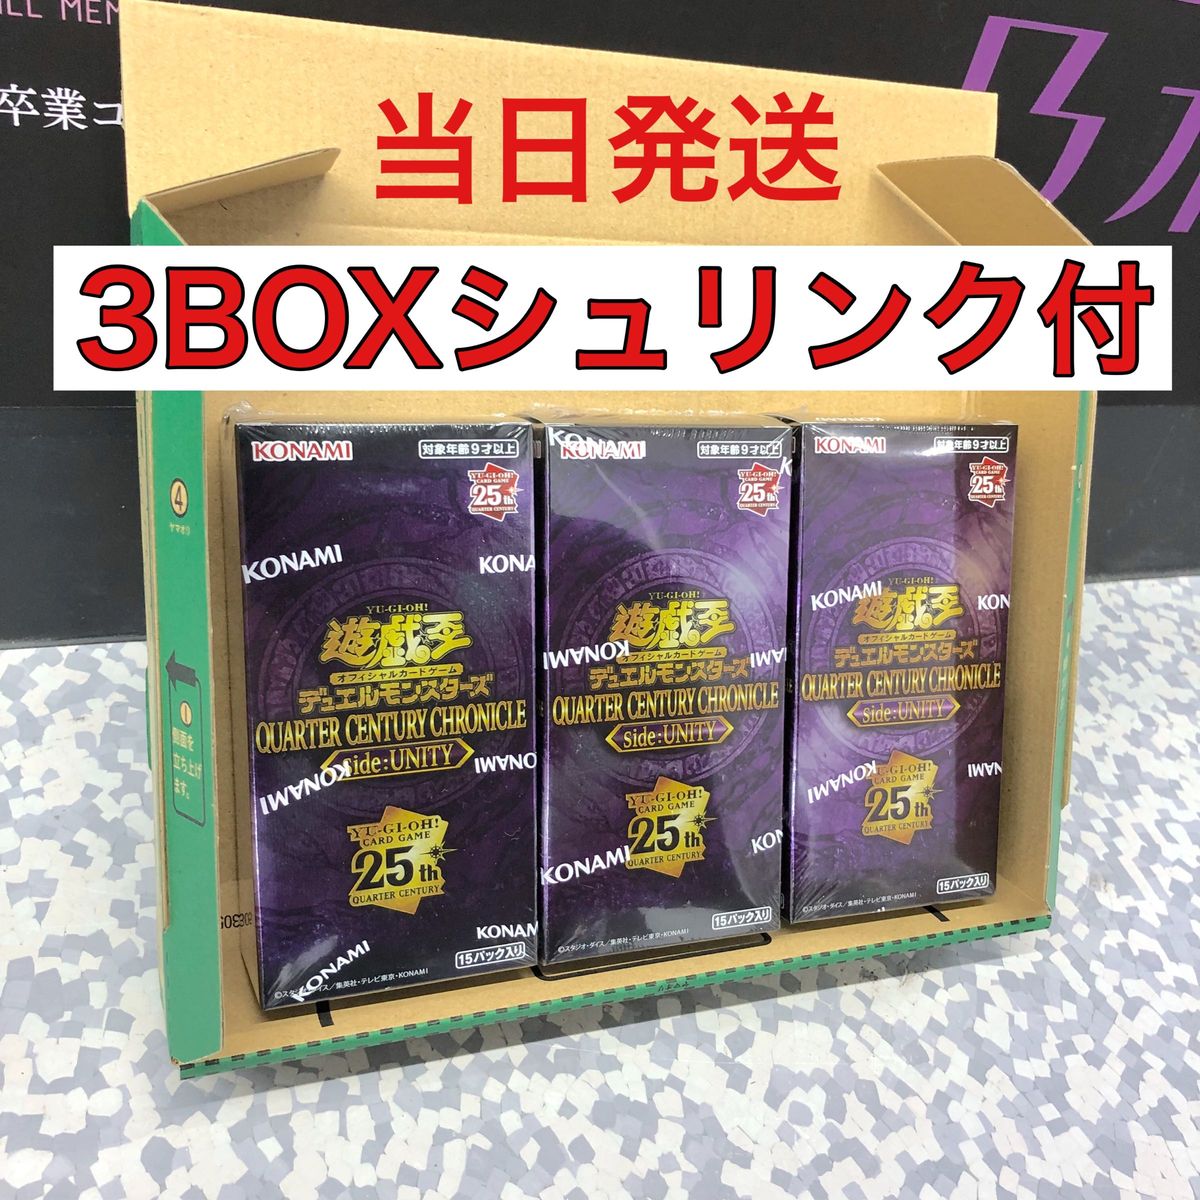 【遊戯王】QUARTER CENTURY CHRONICLE side:UNIT 3BOX 全てシュリンク付